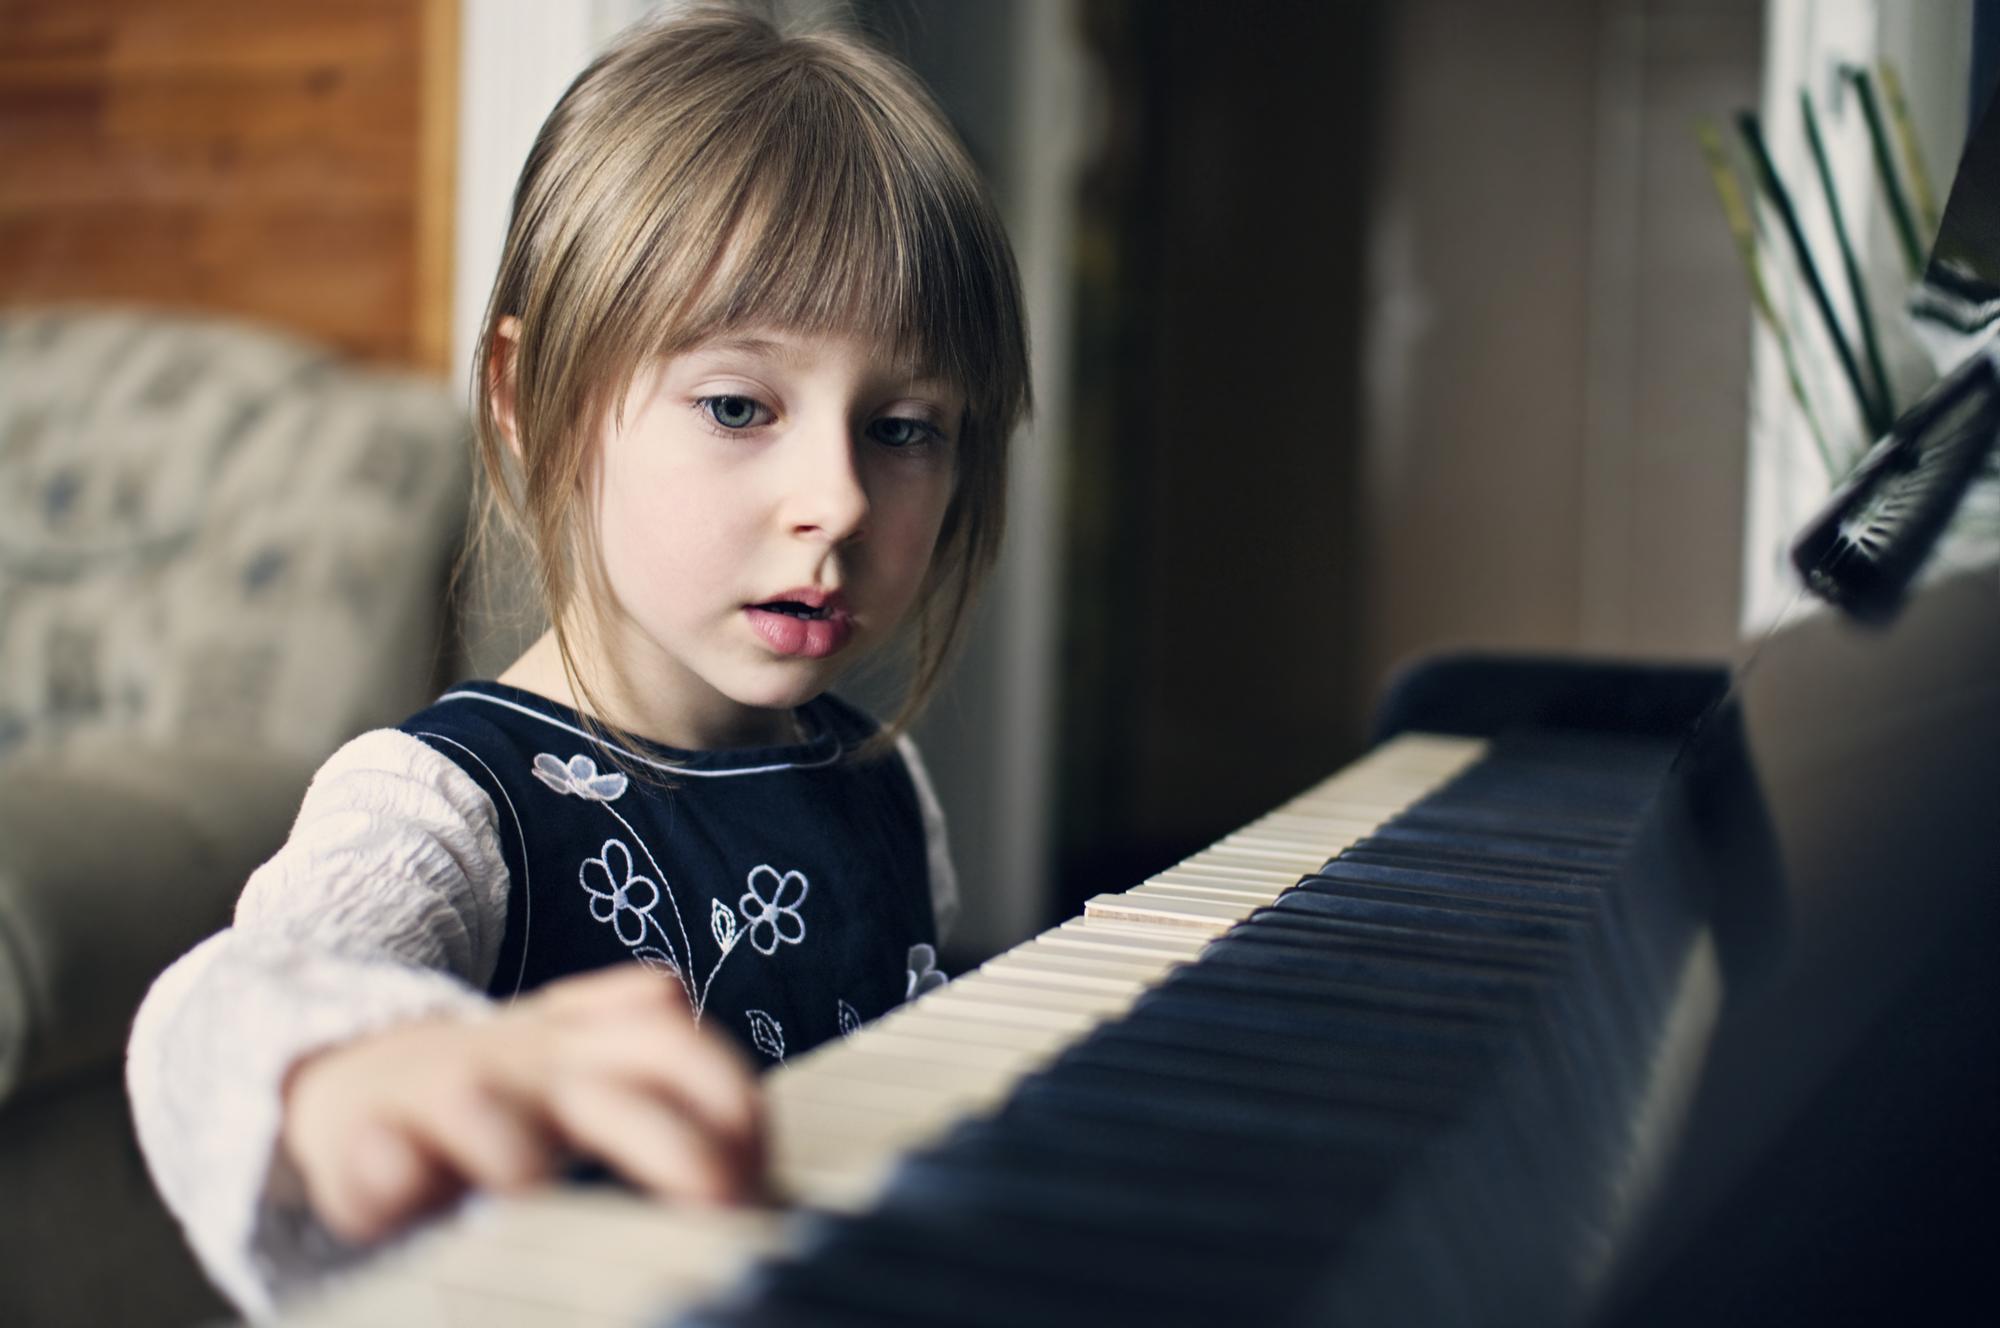 Klaviristka a pedagogička o podpore hudobného talentu: Dieťa pri hre vždy  najskôr chváľte, až potom opravujte alebo kritizujte | Najmama.sk